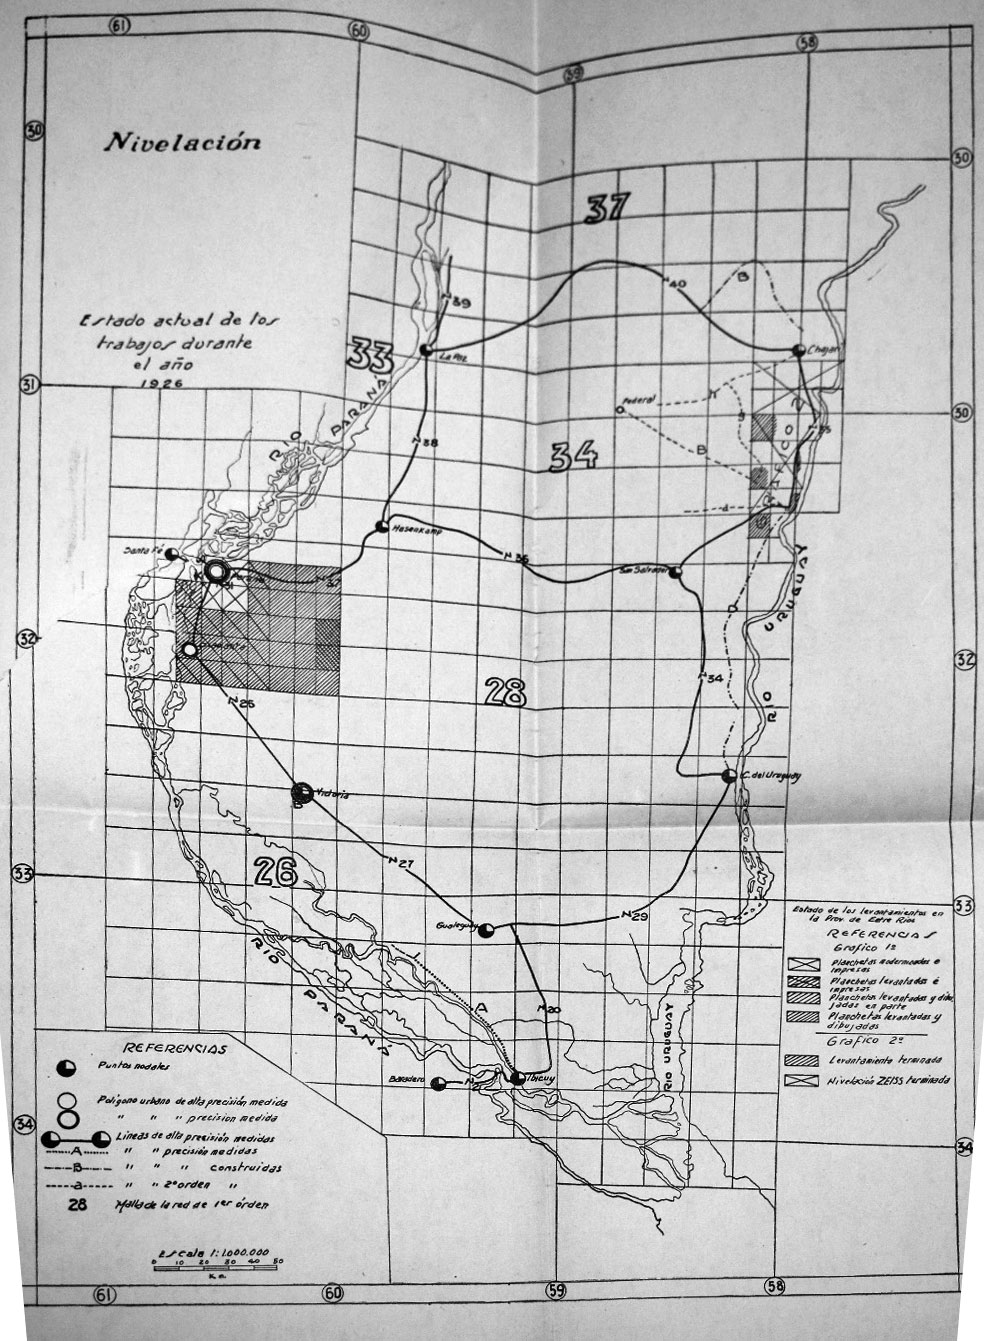 Mapa de Entre
Ríos con la nivelación realizado por el Instituto Geográfico Militar, 1926 

   

 